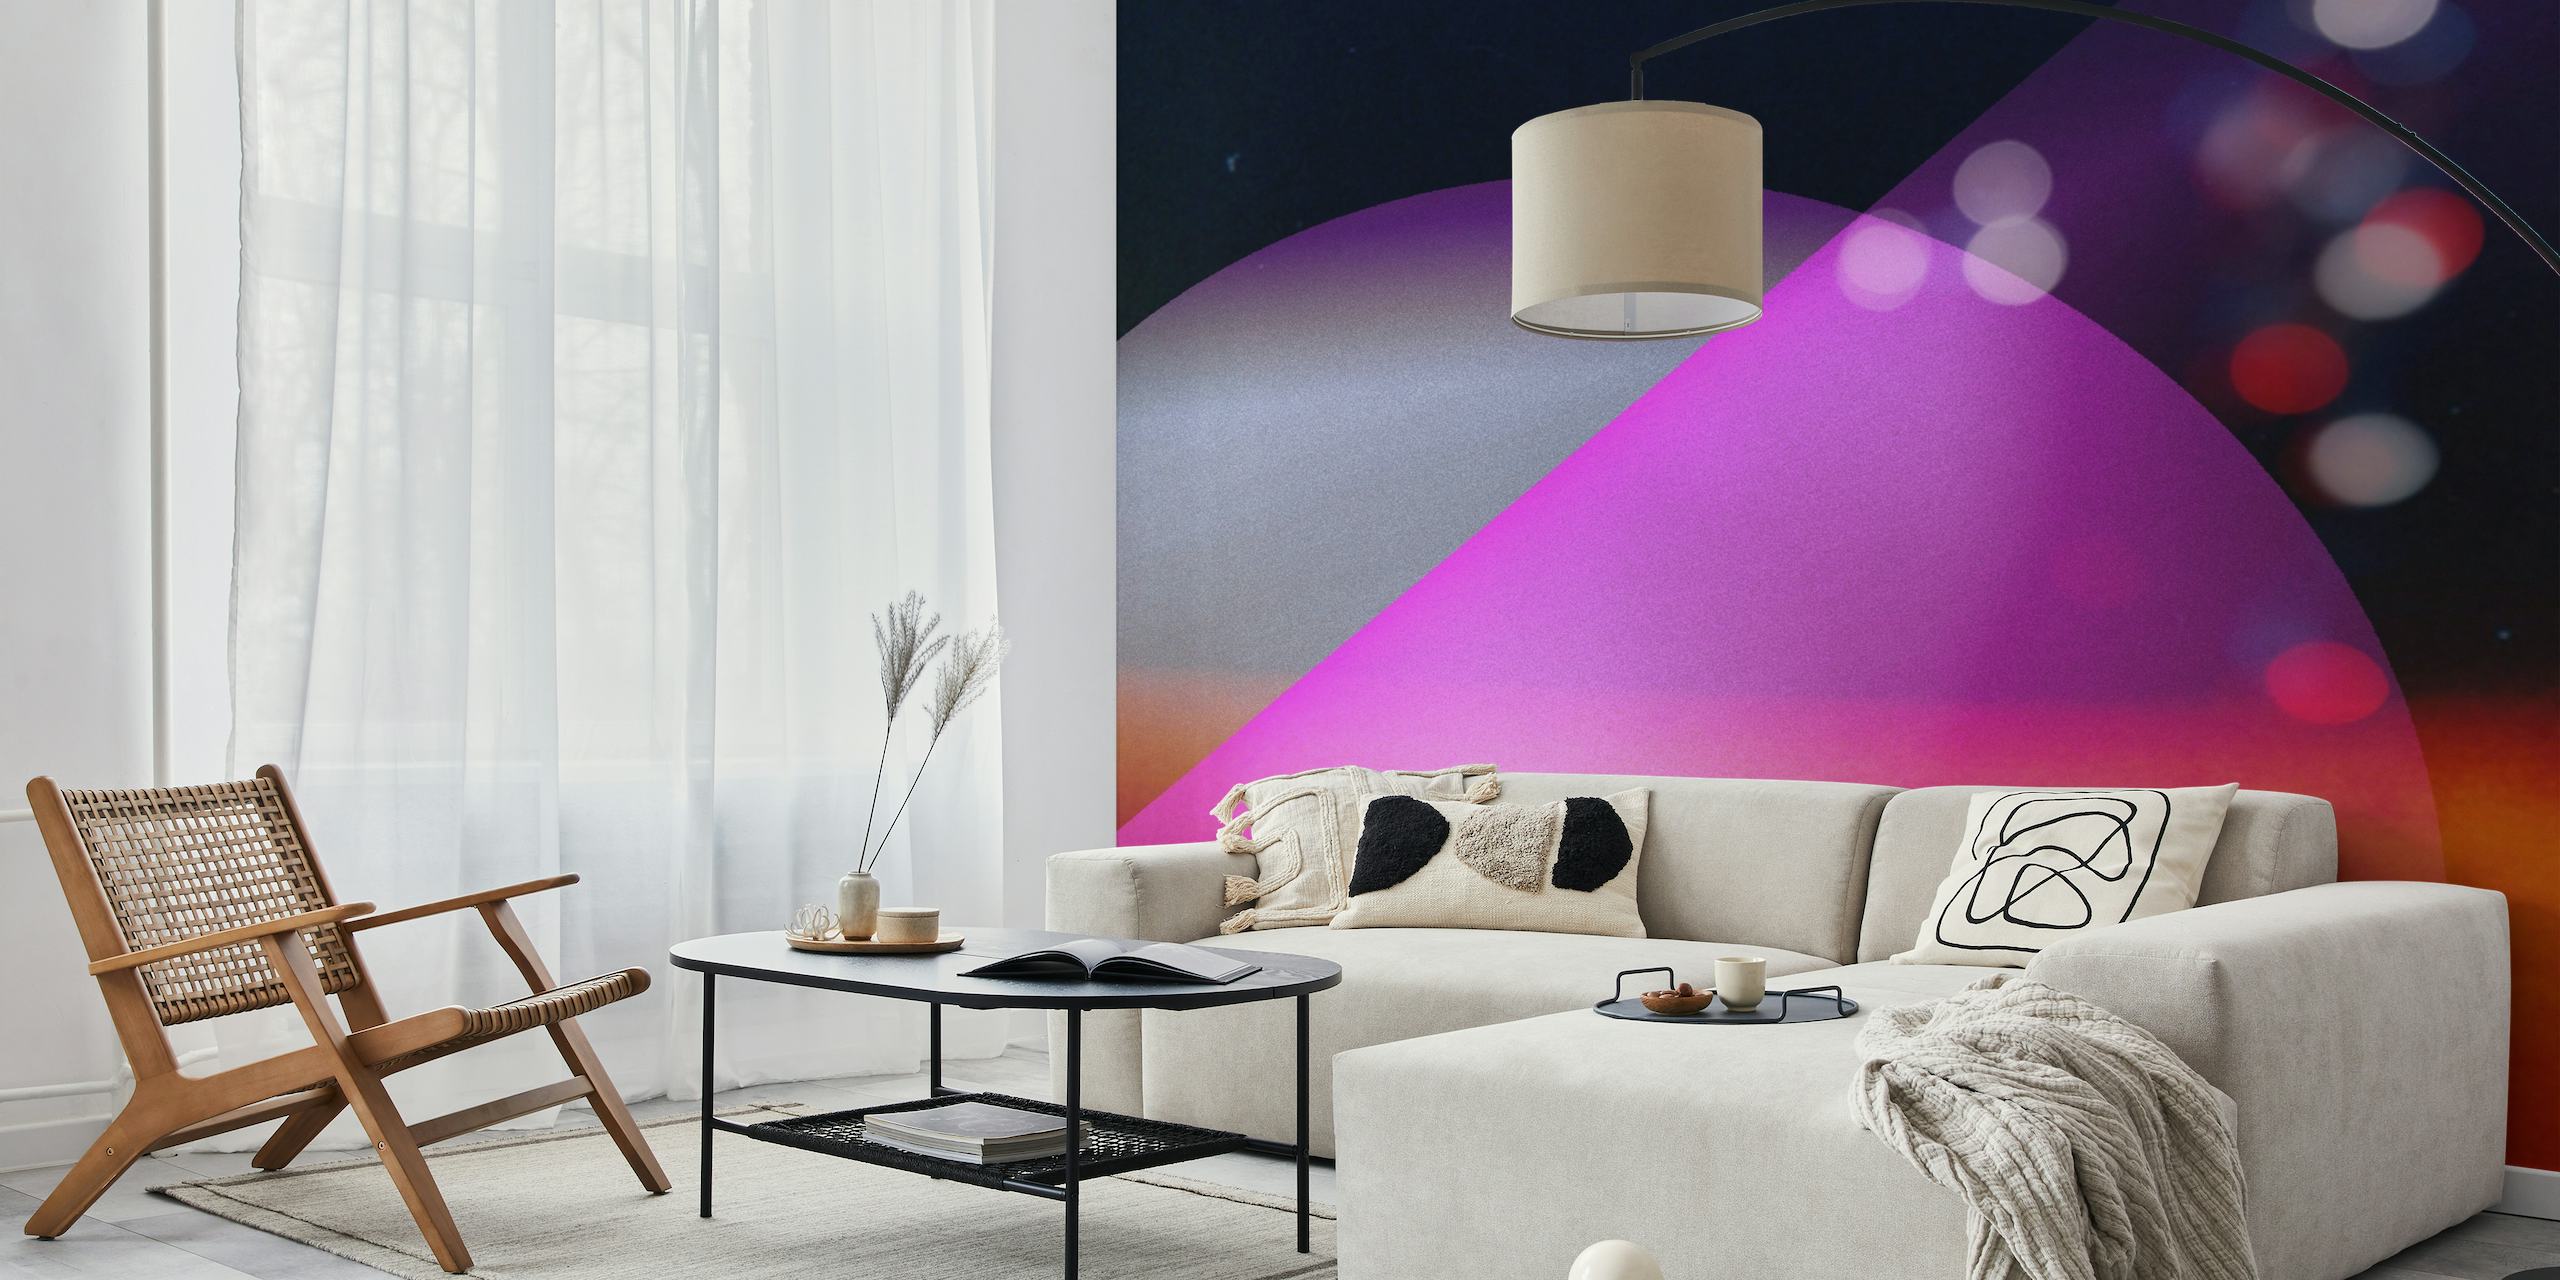 Abstrakt kosmisk vægmaleri med levende lilla, blå og pink, der ligner et fjernt univers